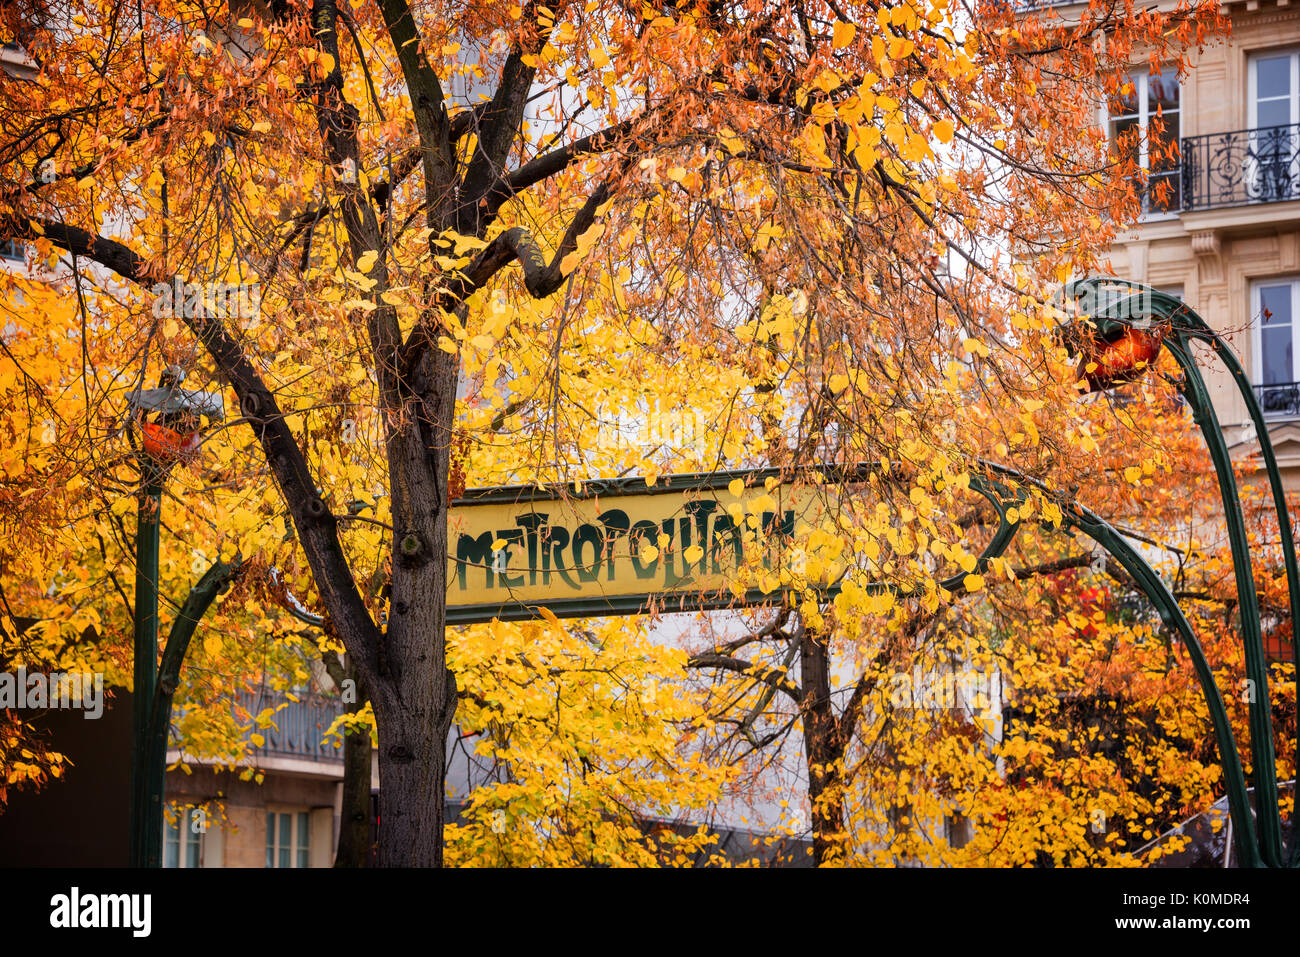 Paris Art nouveau Metropolitain sign in autumn Stock Photo